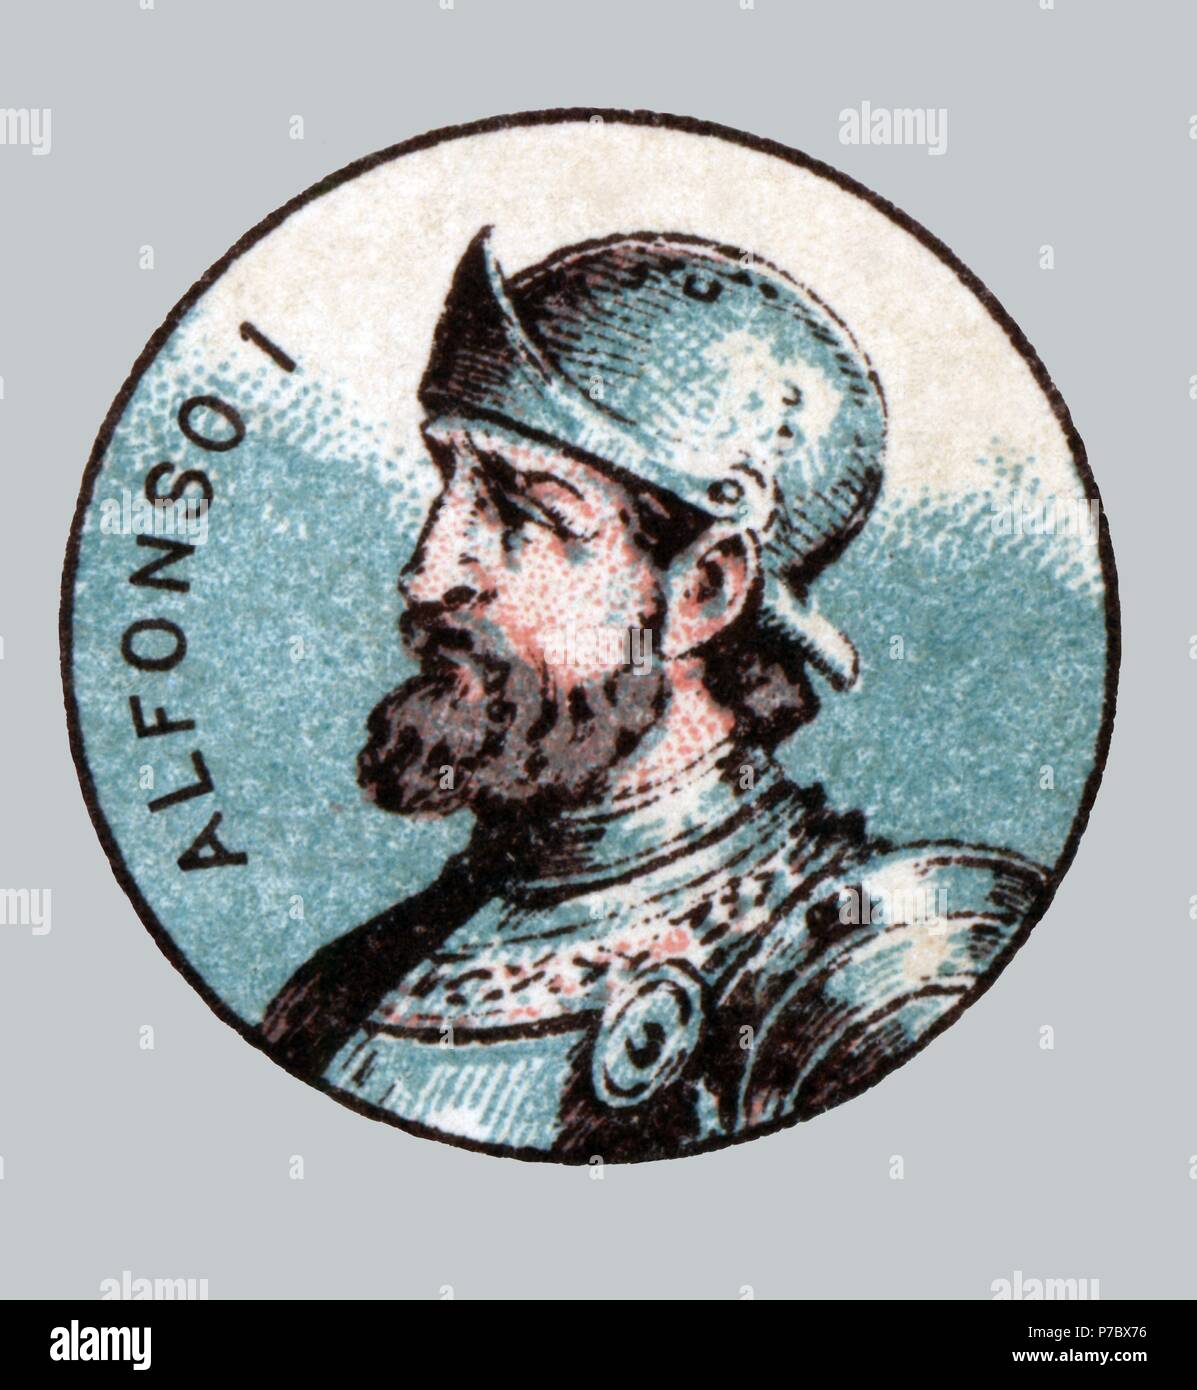 España. Edad media. Alfonso I el católico (693-757), rey de Asturias del 739 al 757. Stock Photo